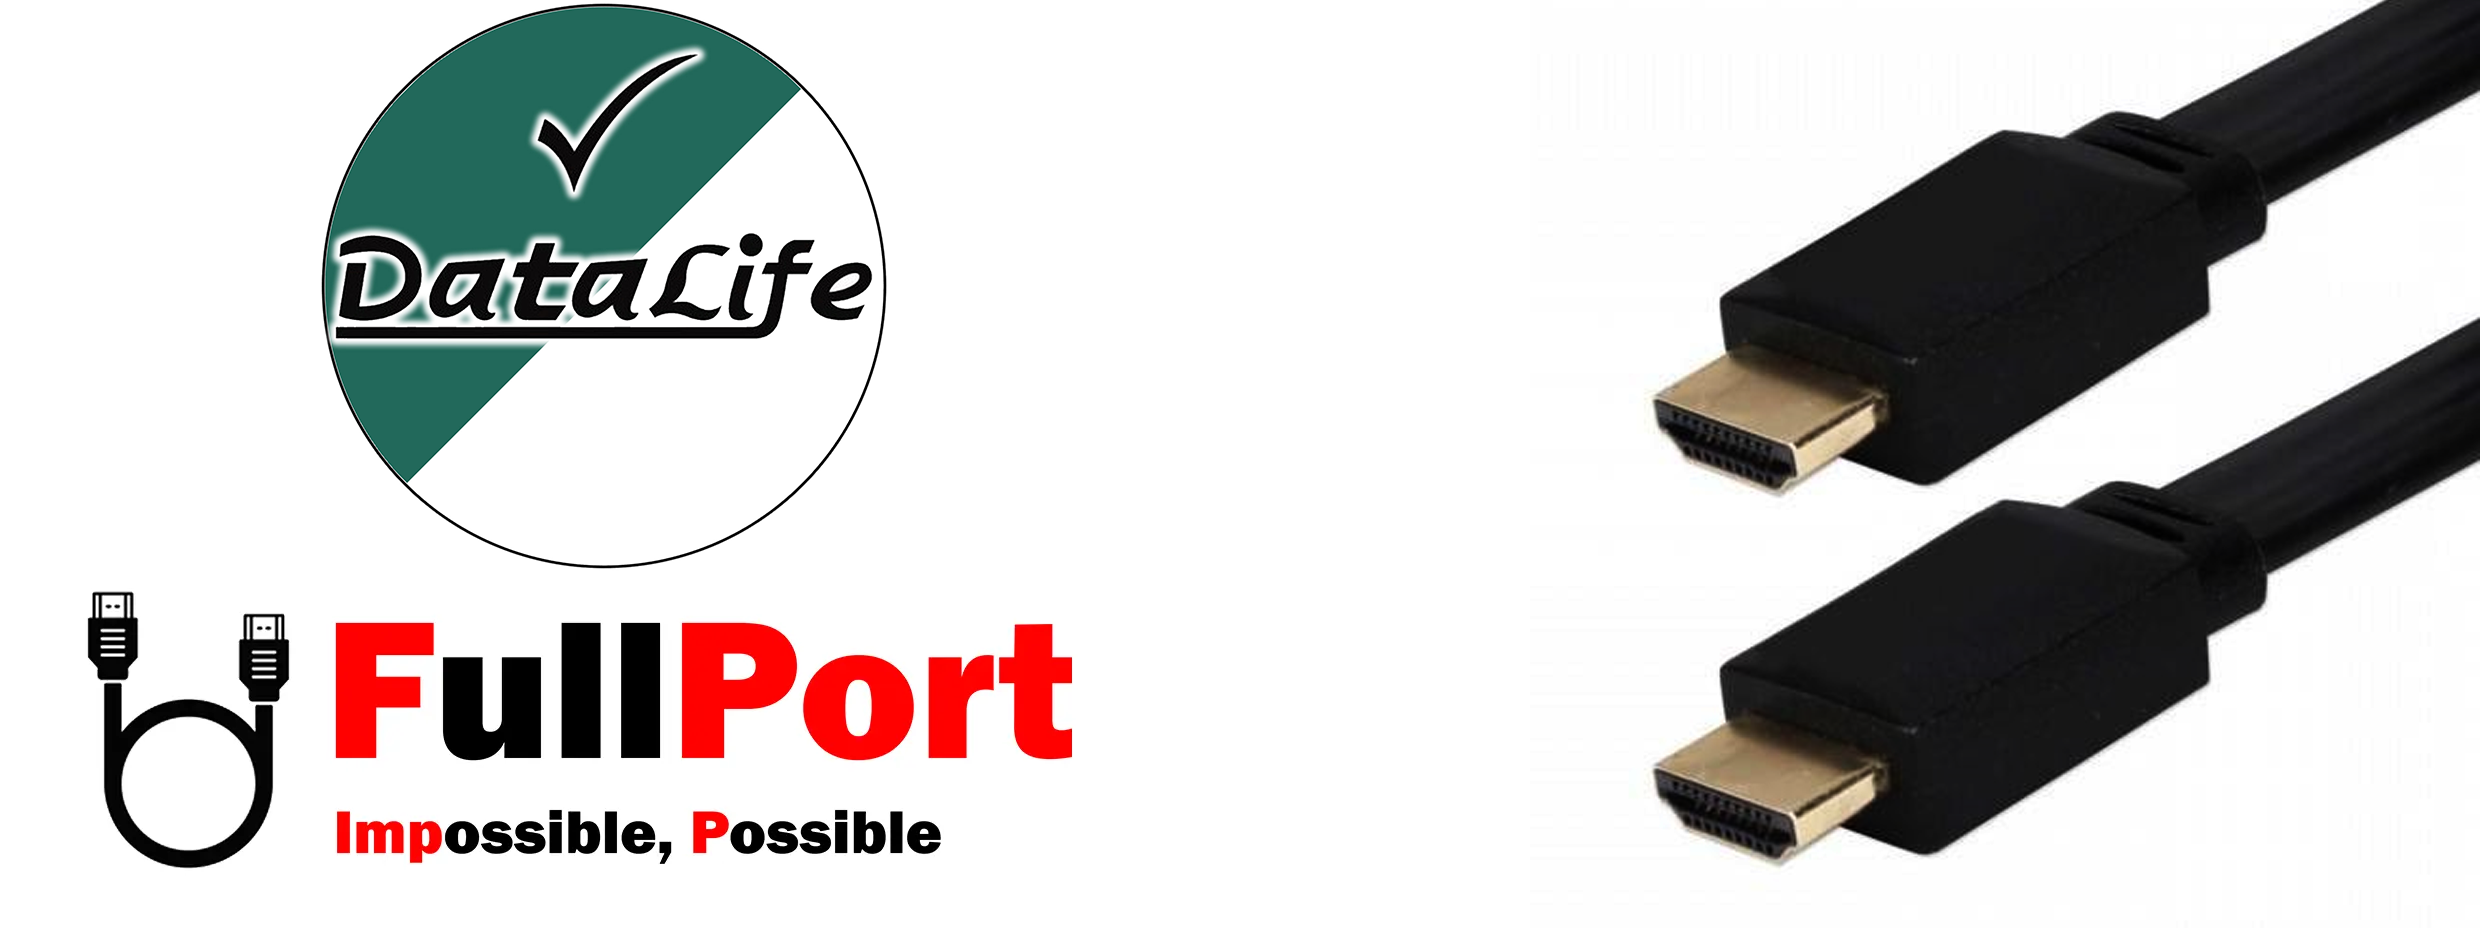 خرید اینترنتی کابل HDMI دیتالایف | Datalife مدل فلت | Flat با گارانتی تست و تضمین اصالت کالا از فروشگاه اینترنتی فول پورت